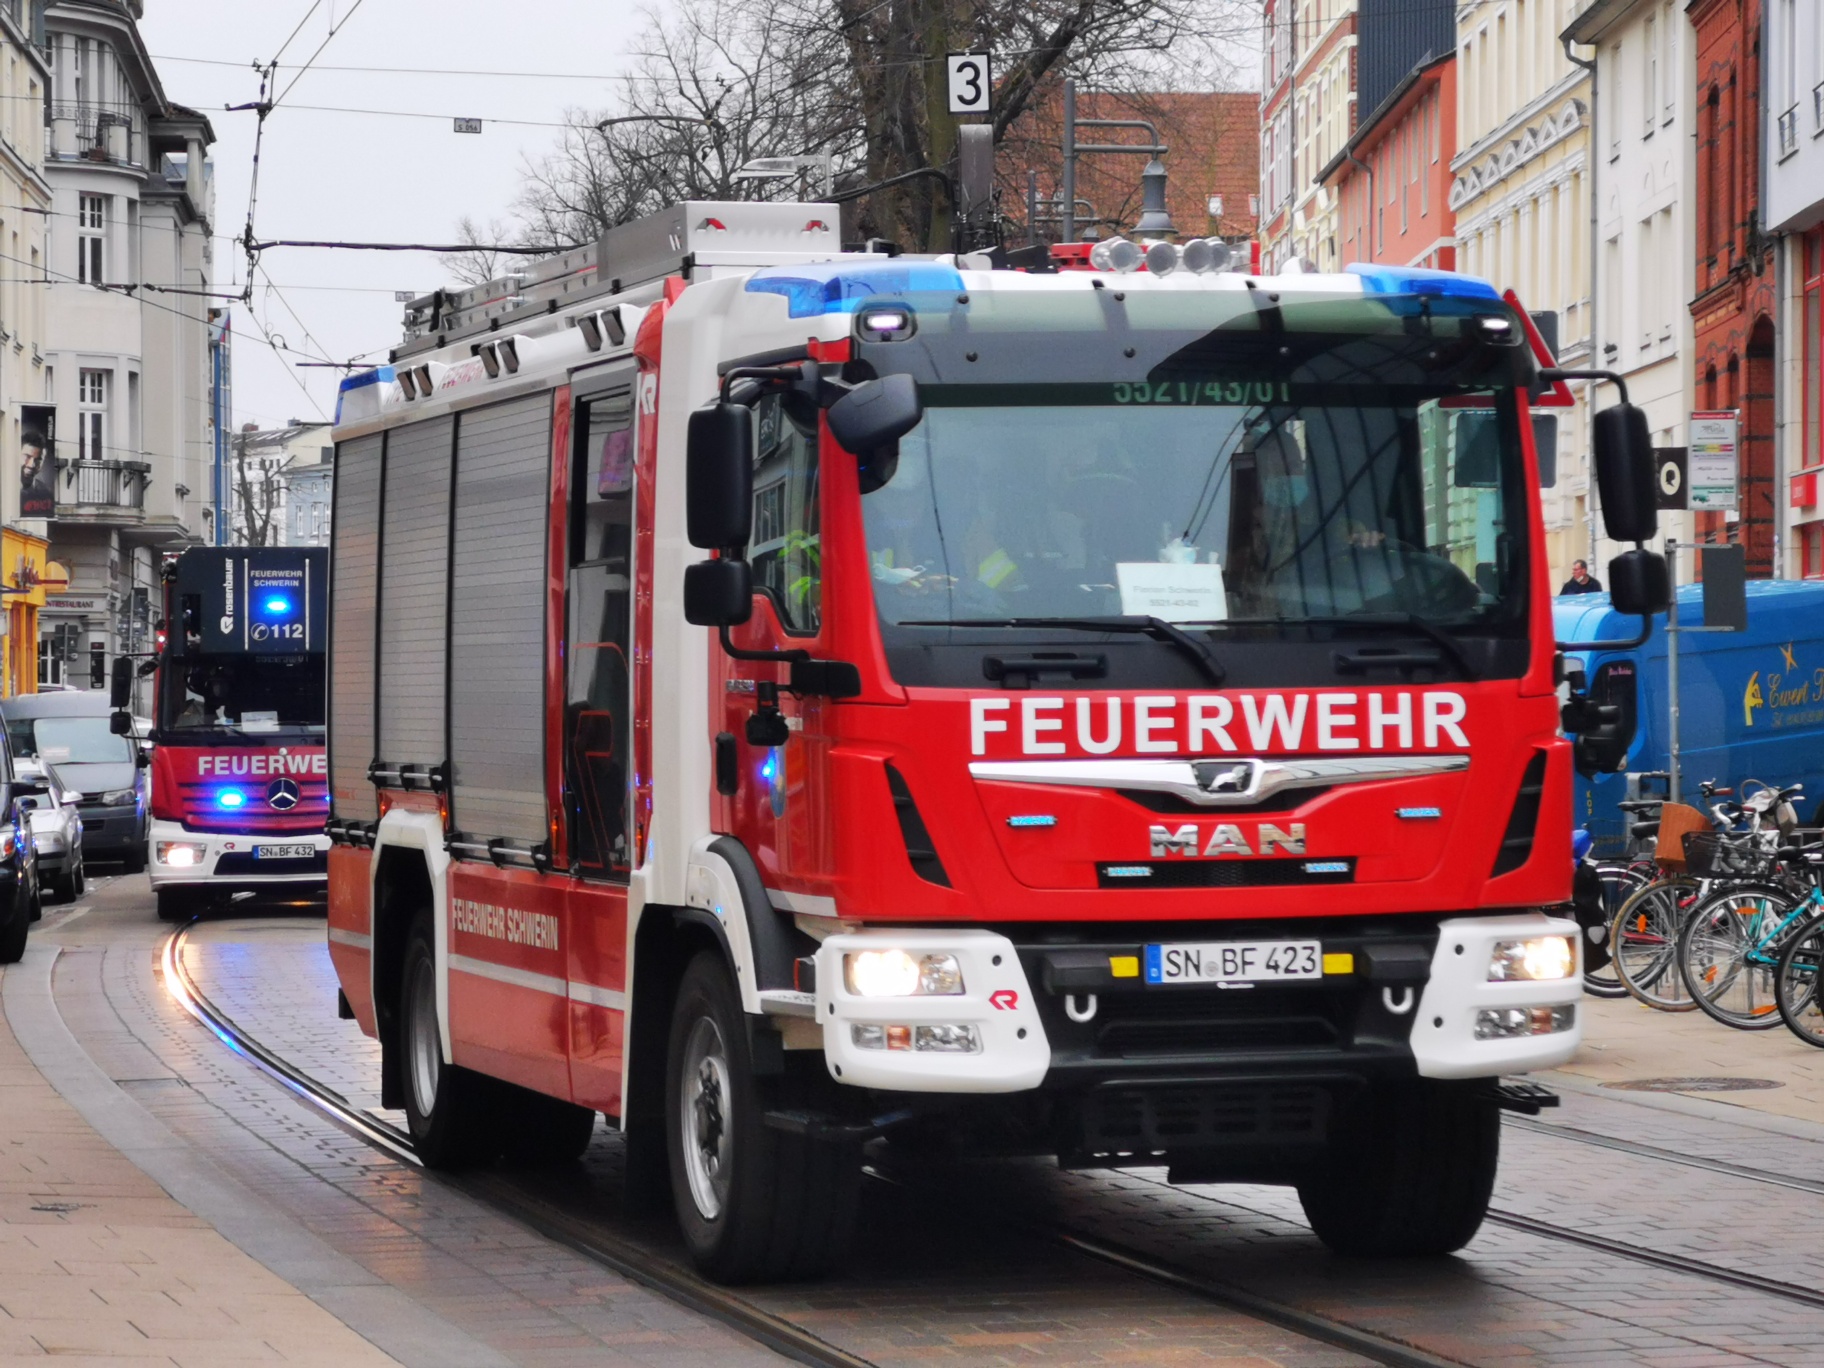 Feuerwehr_Schwerin_schwerin-lokal_Stephan_Haring